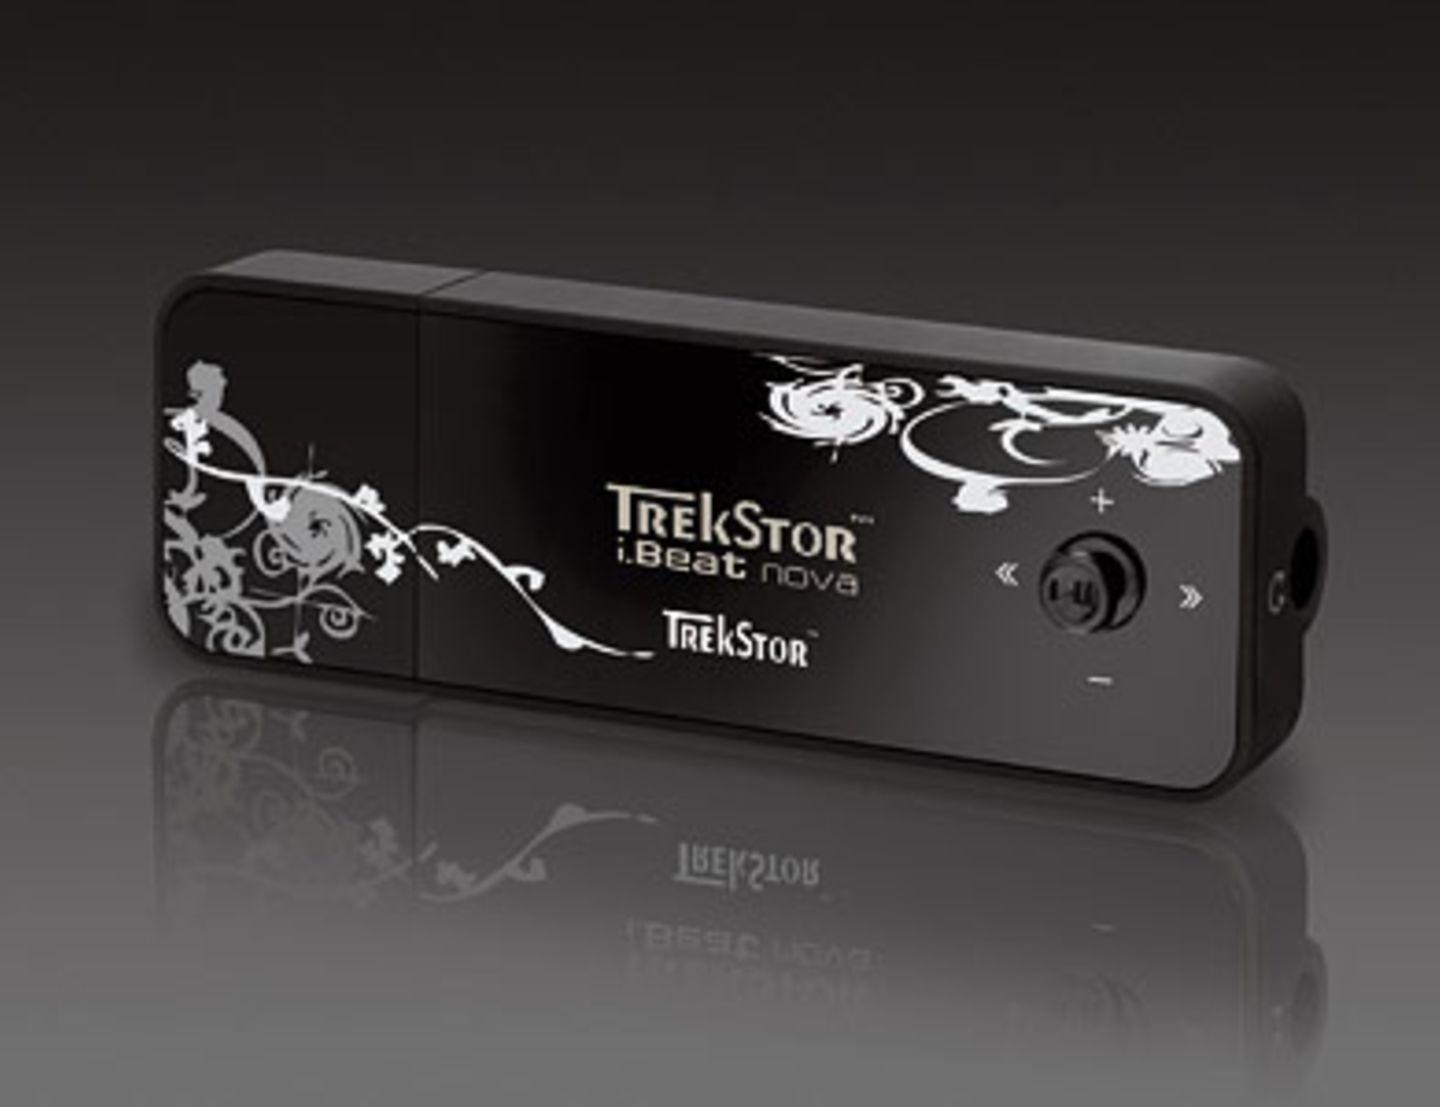 Im pfiffigen Design präsentiert sich der MP3-Player Nova von Trekstore. In dem Soft-Touch-Gehäuse verbirgt sich ein Farb-OLED-Display, ein maximaler Speicherplatz von 8 GB und ein integriertes Diktiergerät zum Aufsprechen von Notizen. Um 53 Euro. Mehr zum Trekstore Nova findet ihr bei "Trekstore".